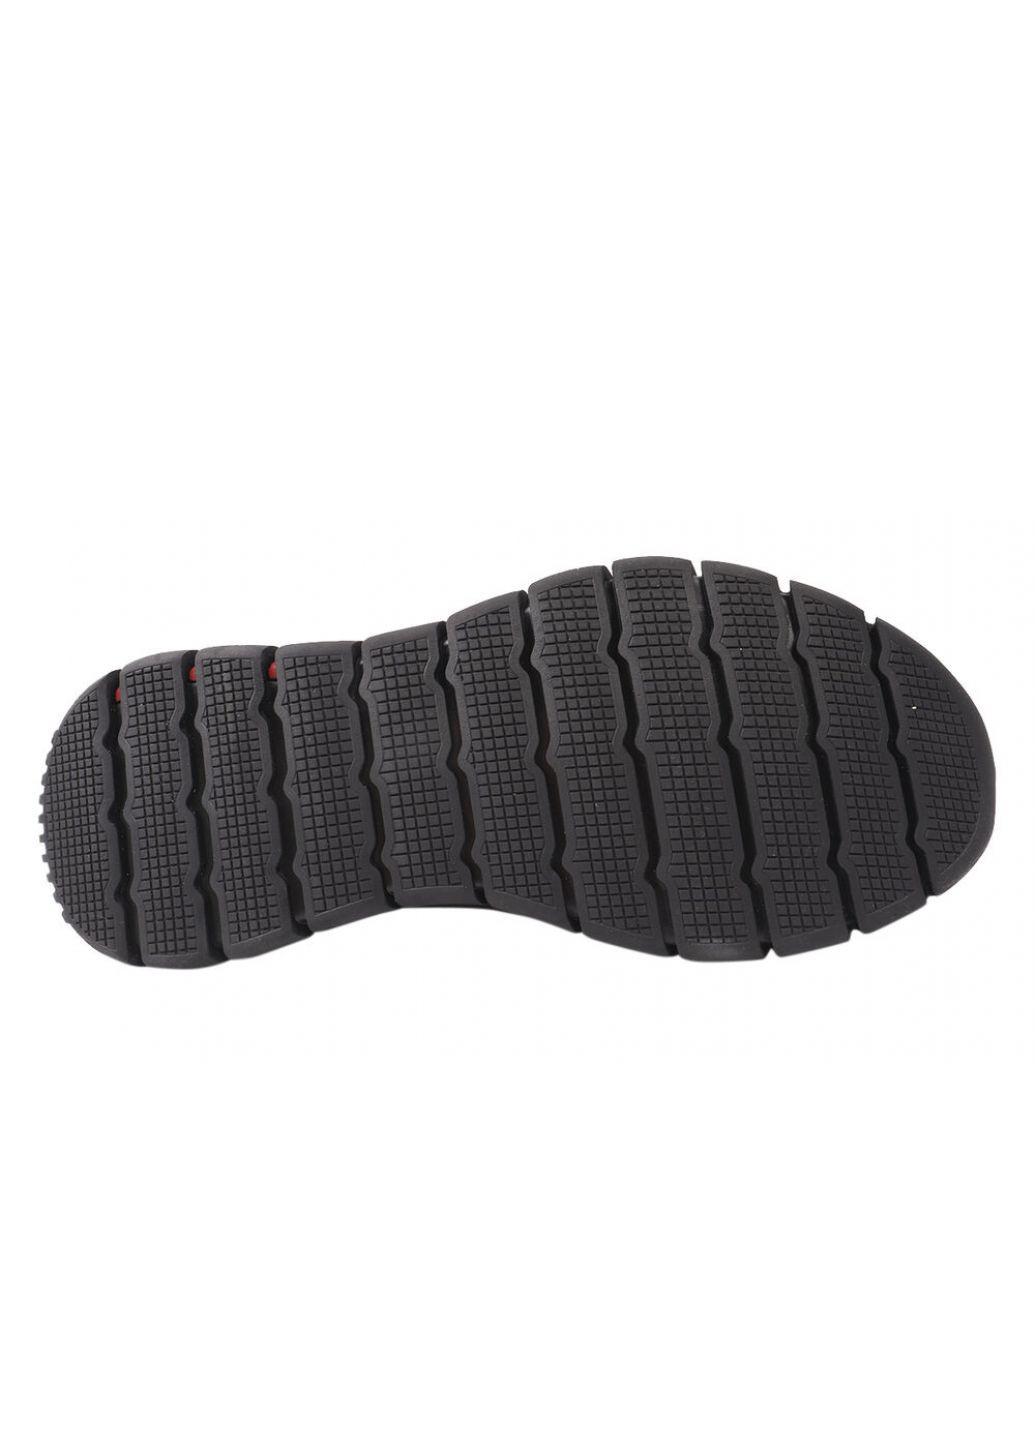 Черные кроссовки мужские из текстиля, на низком ходу, на шнуровке, черные, Berisstini 18-21/22DK